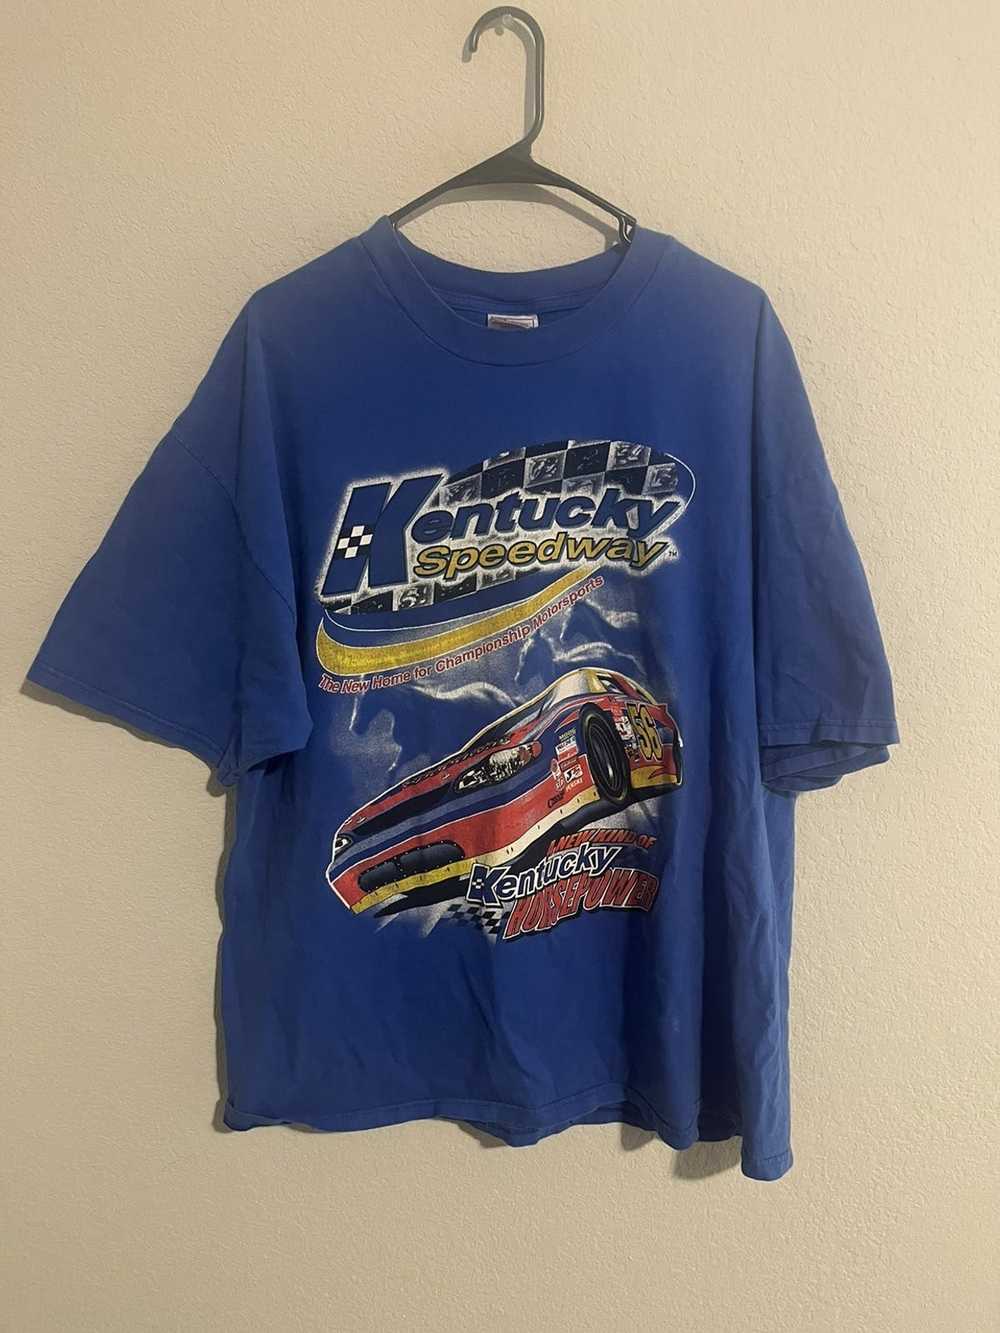 Hanes Kentucky speedway T-shirt - image 4